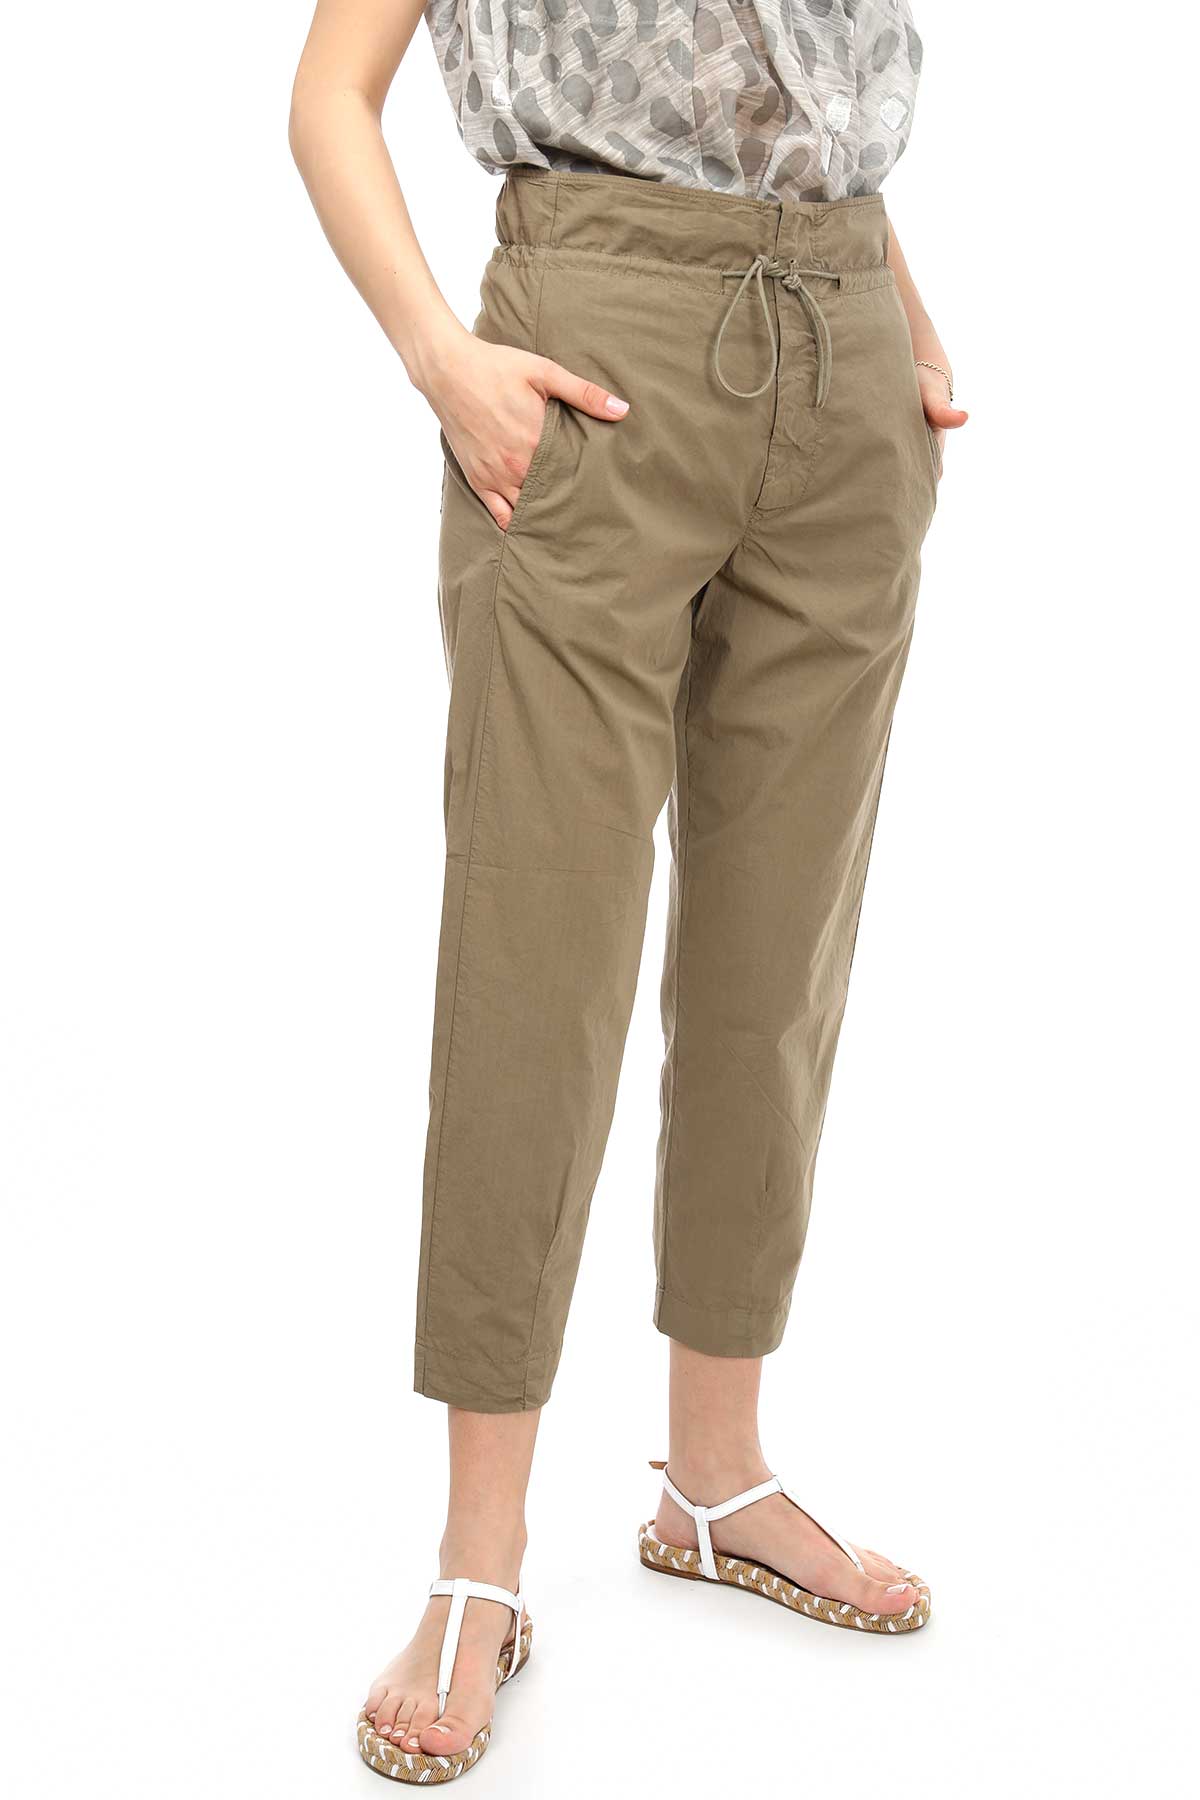 Transit Paperbag Pantolon-Libas Trendy Fashion Store